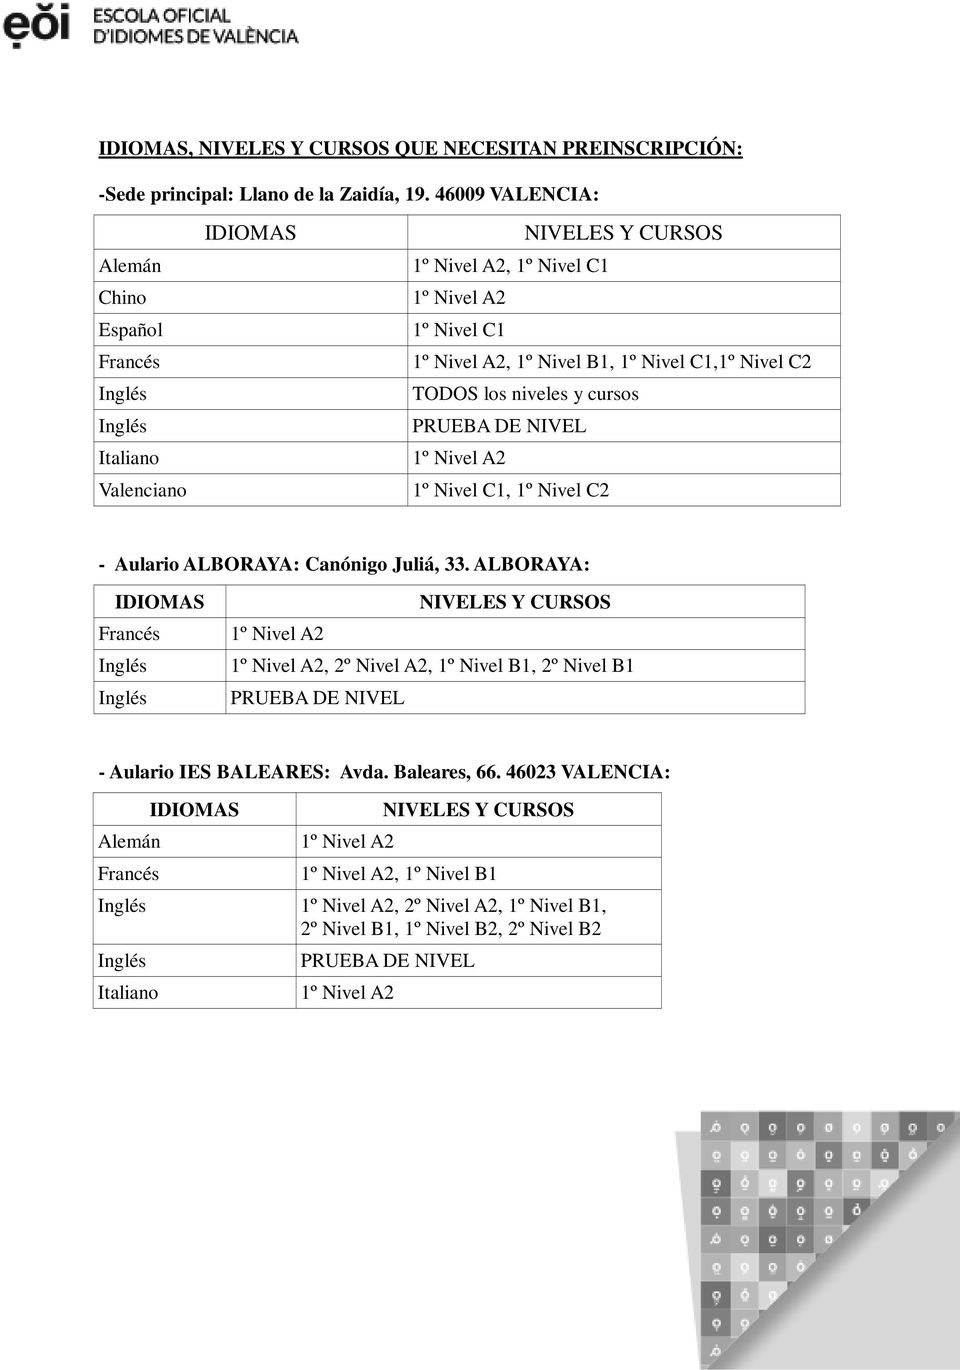 TODOS los niveles y cursos 1º Nivel C1, 1º Nivel C2 - Aulario ALBORAYA: Canónigo Juliá, 33.